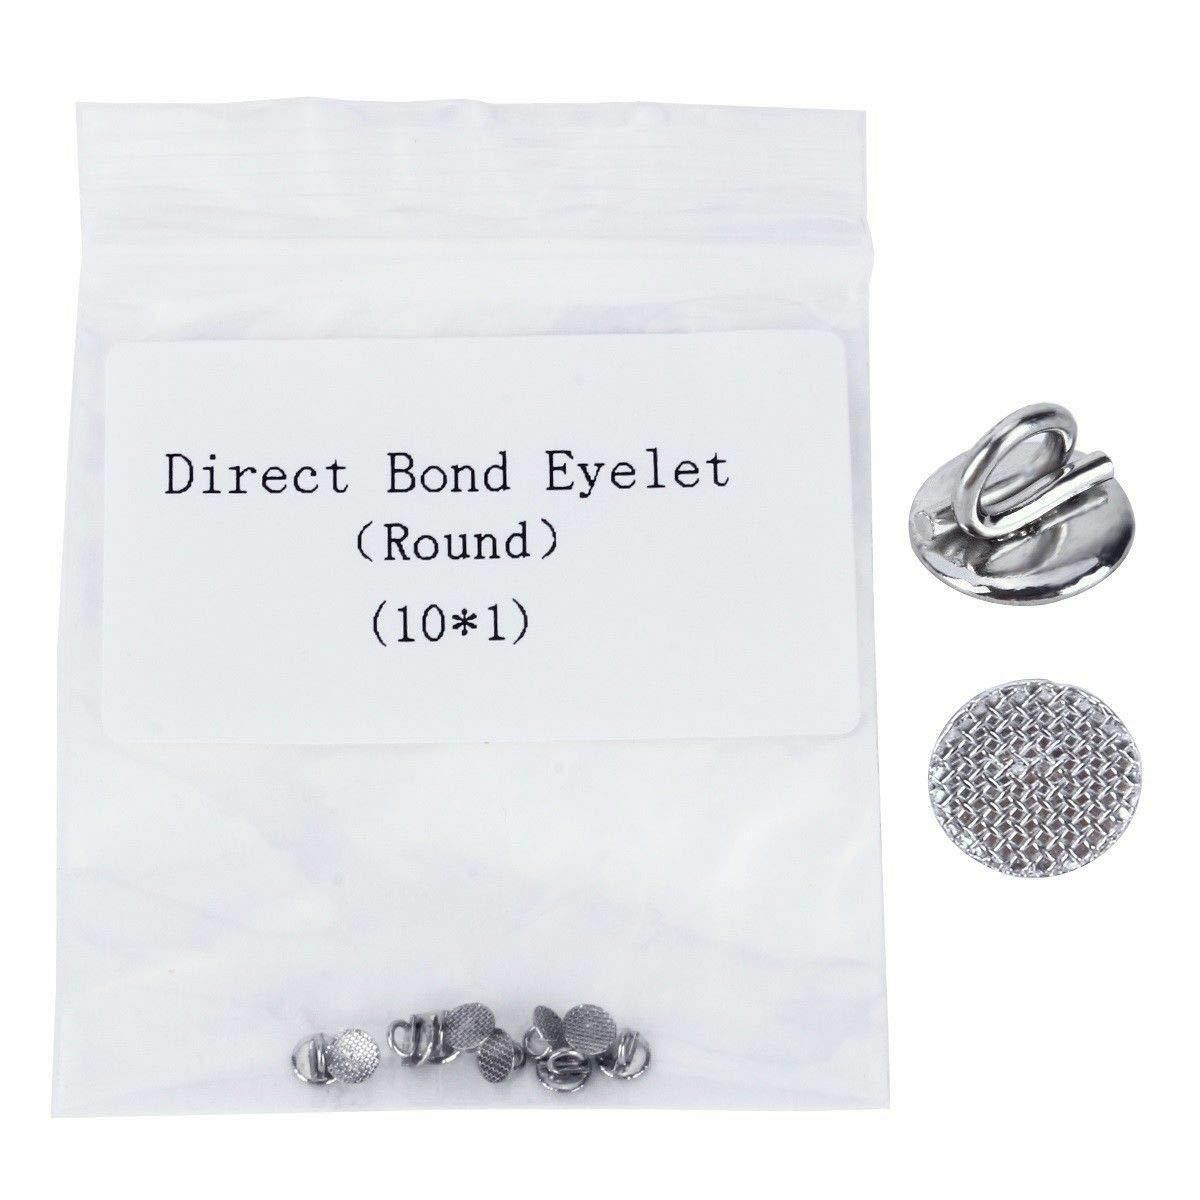 Direct Bond Eyelets Round Base